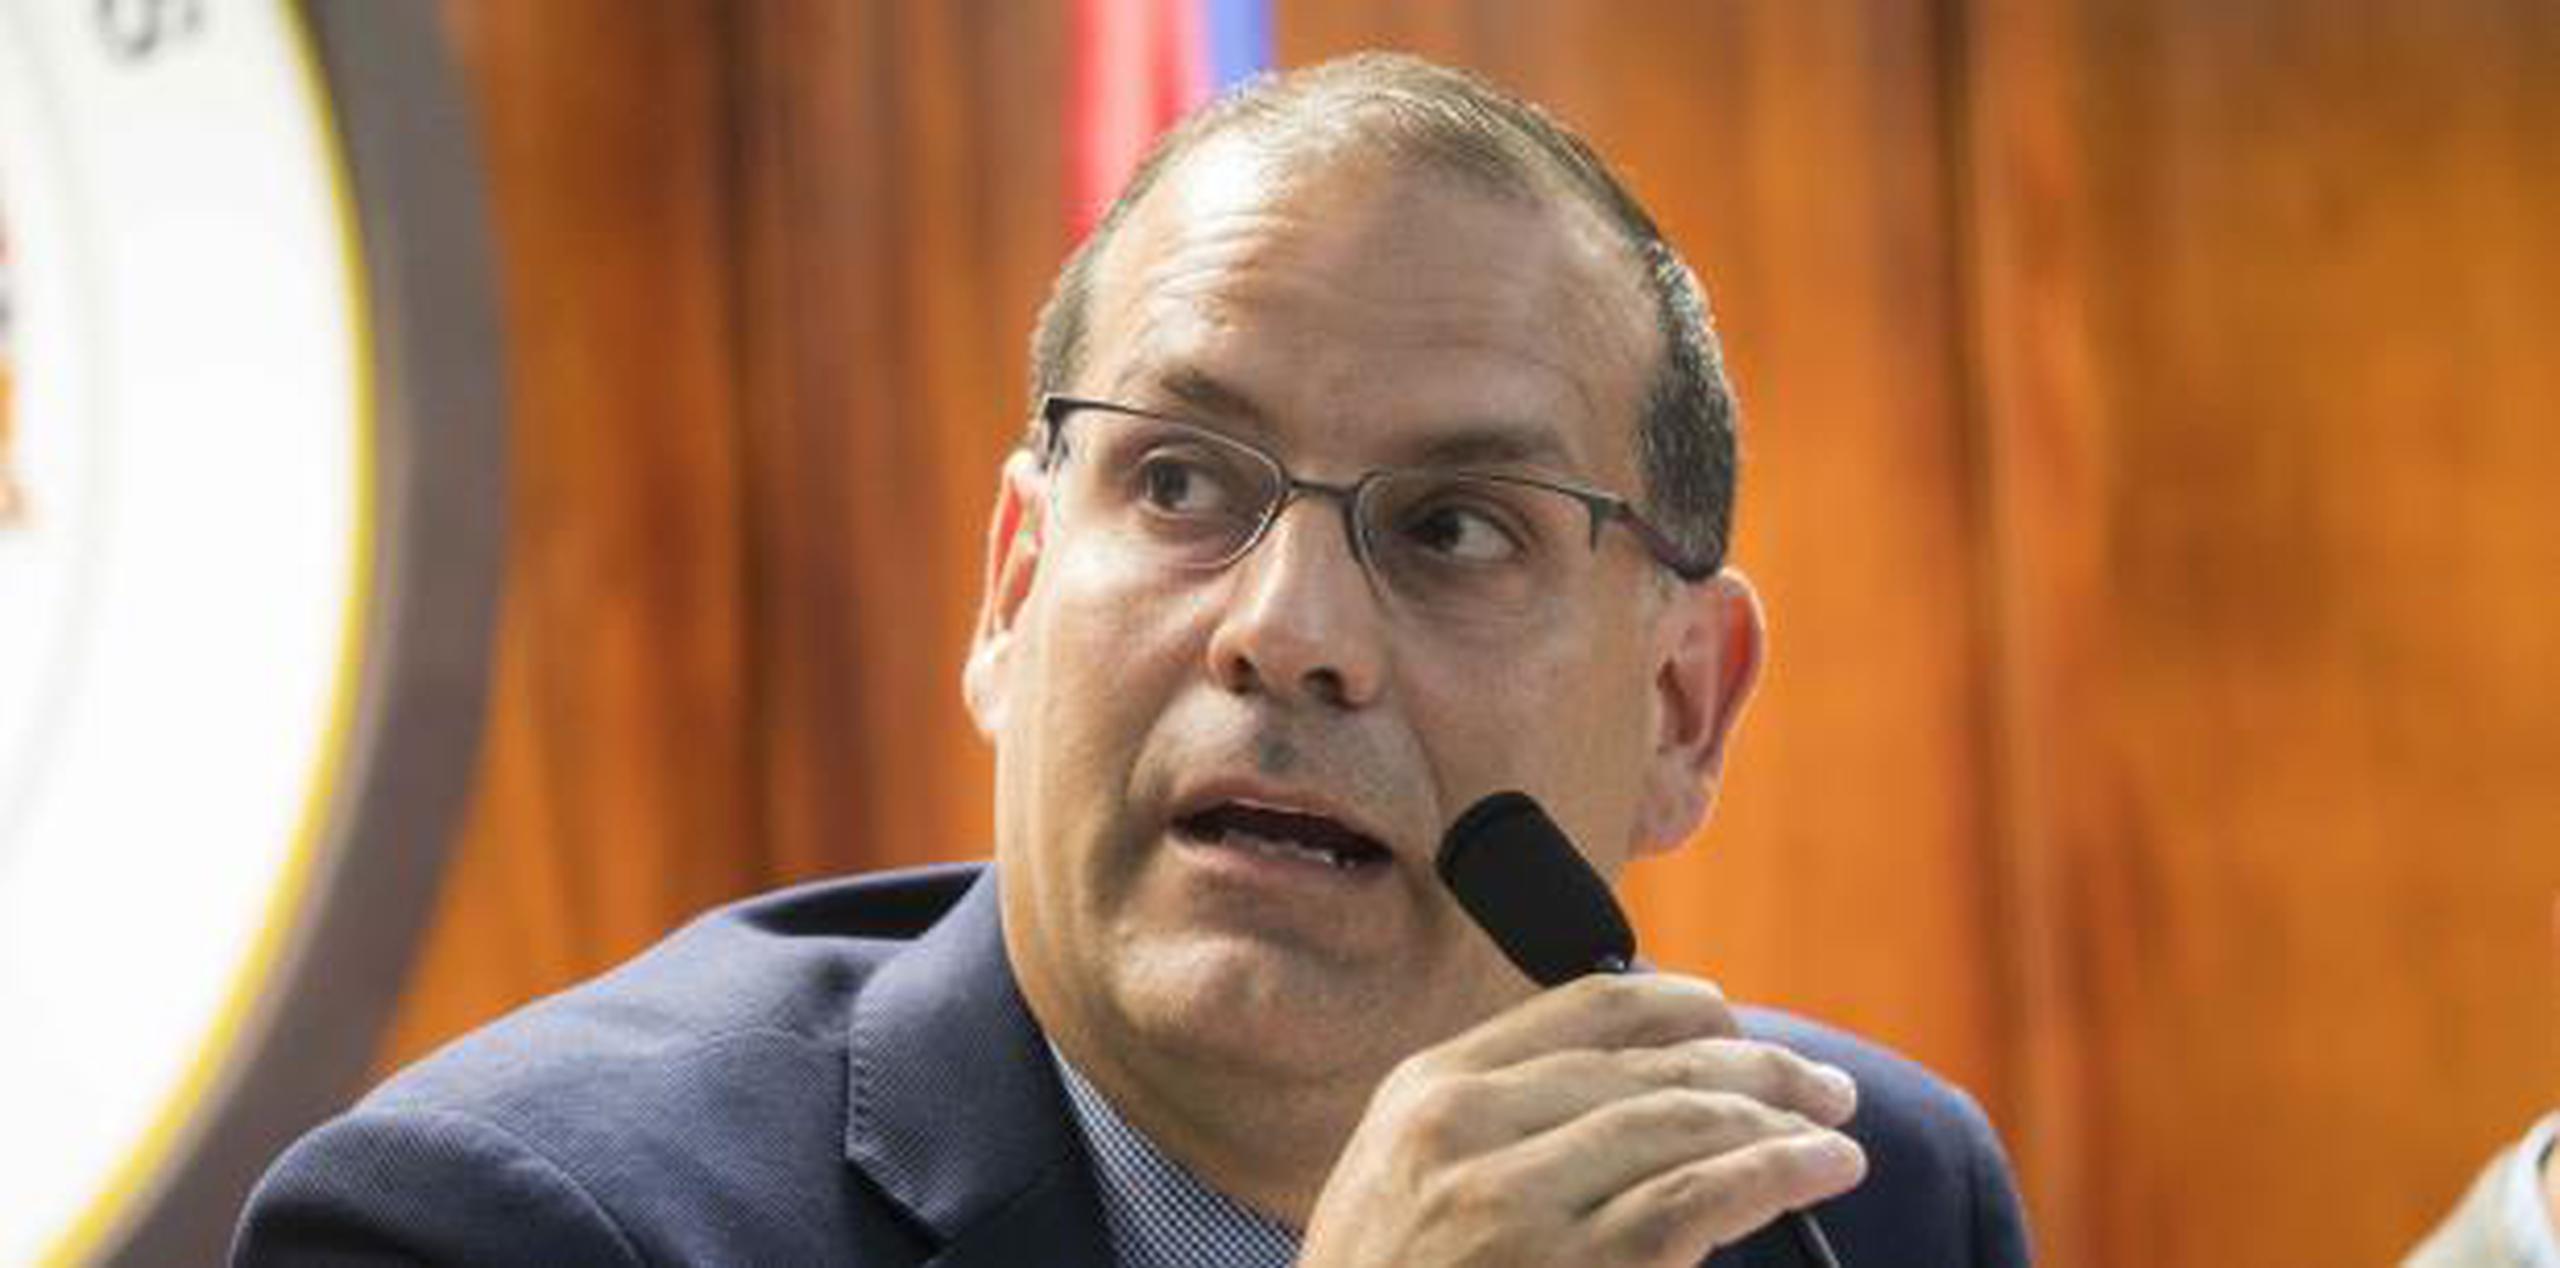 El representante Guillermo Miranda Rivera enfrenta una querella en la Comisión de Ética de la Cámara de Representantes. (Archivo)